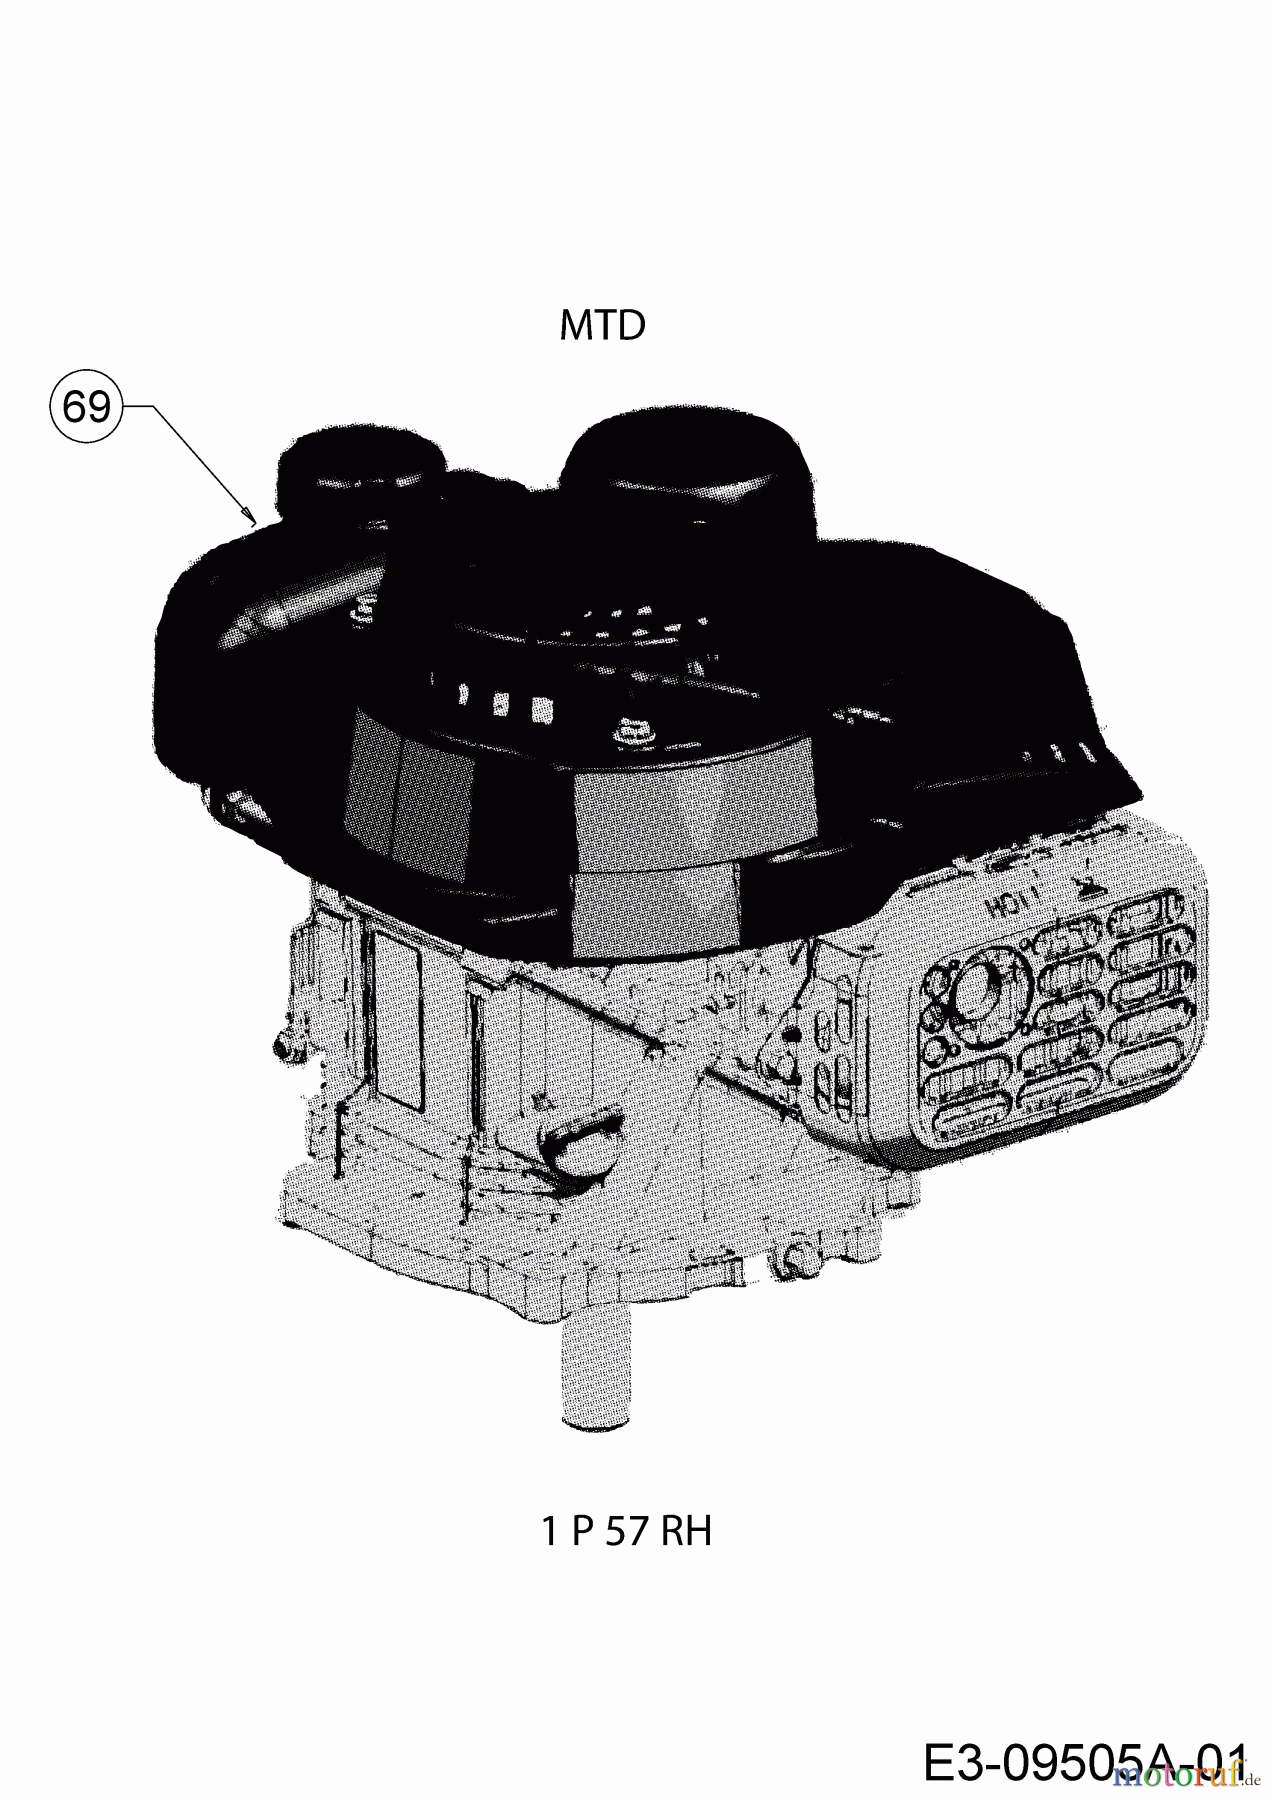  MTD Petrol mower DL 46 P 11A-J1SJ677  (2017) Engine MTD